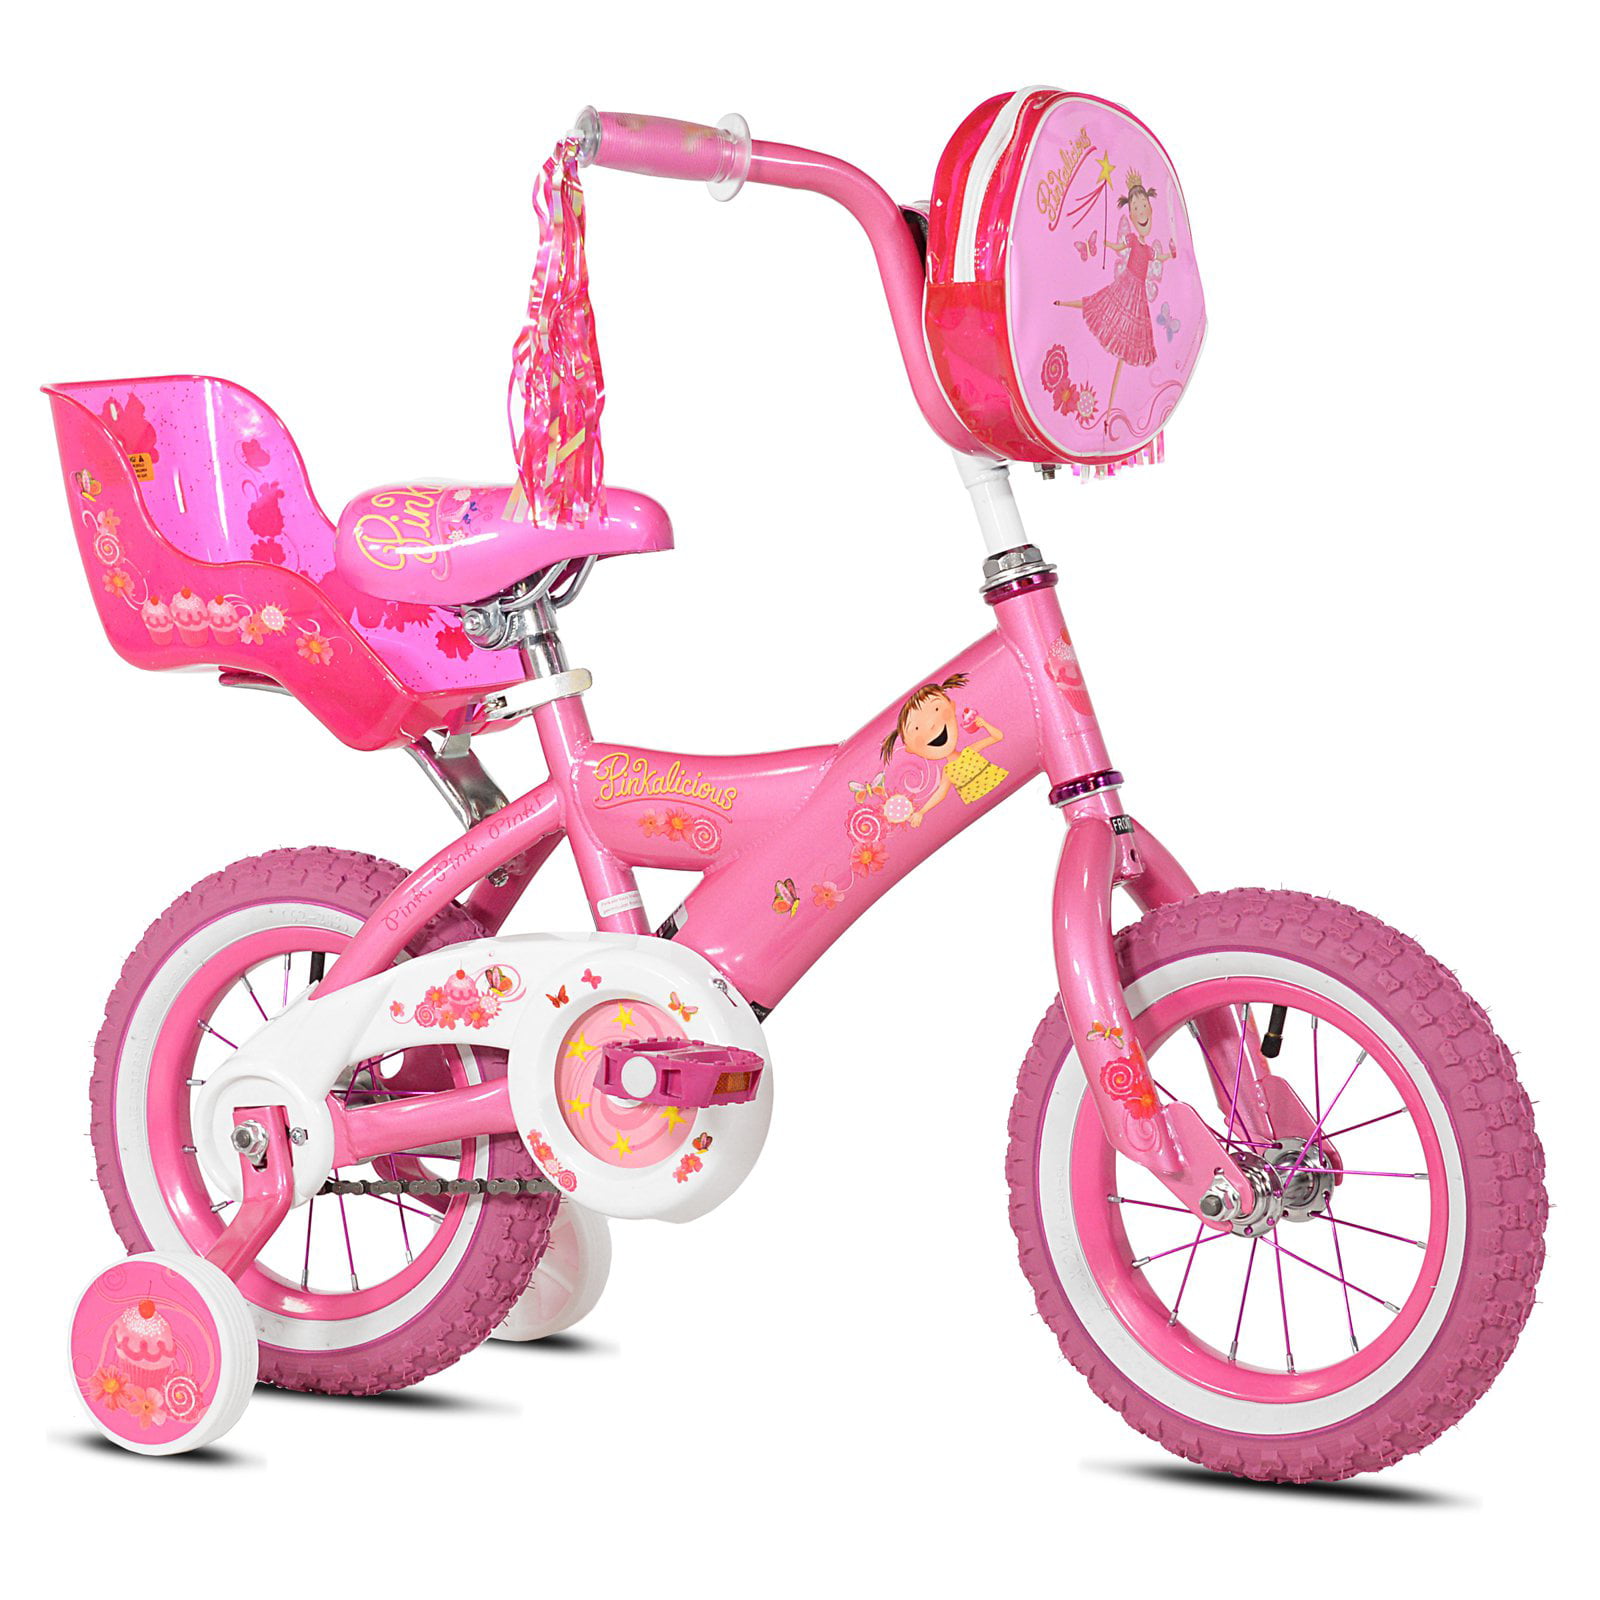 Pinkalicious 12 in. Girls Bike